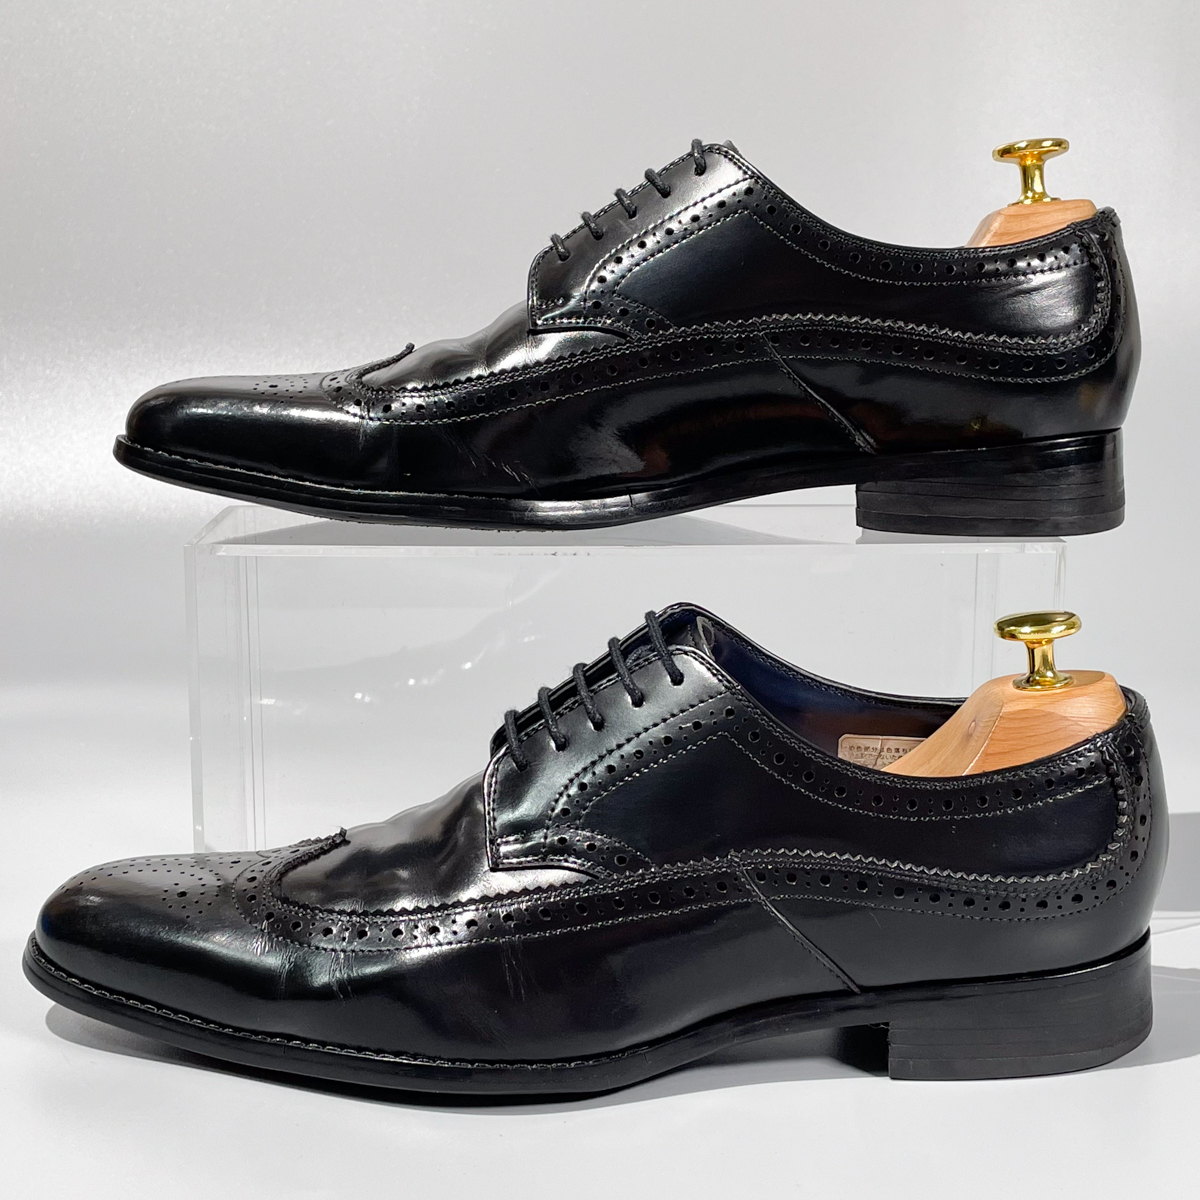 即決 REGAL リーガル ウイングチップ フルブローグ ブラック 黒 メンズ 本革 レザー 革靴 25.5cm ビジネスシューズ フォーマル A1915_画像6